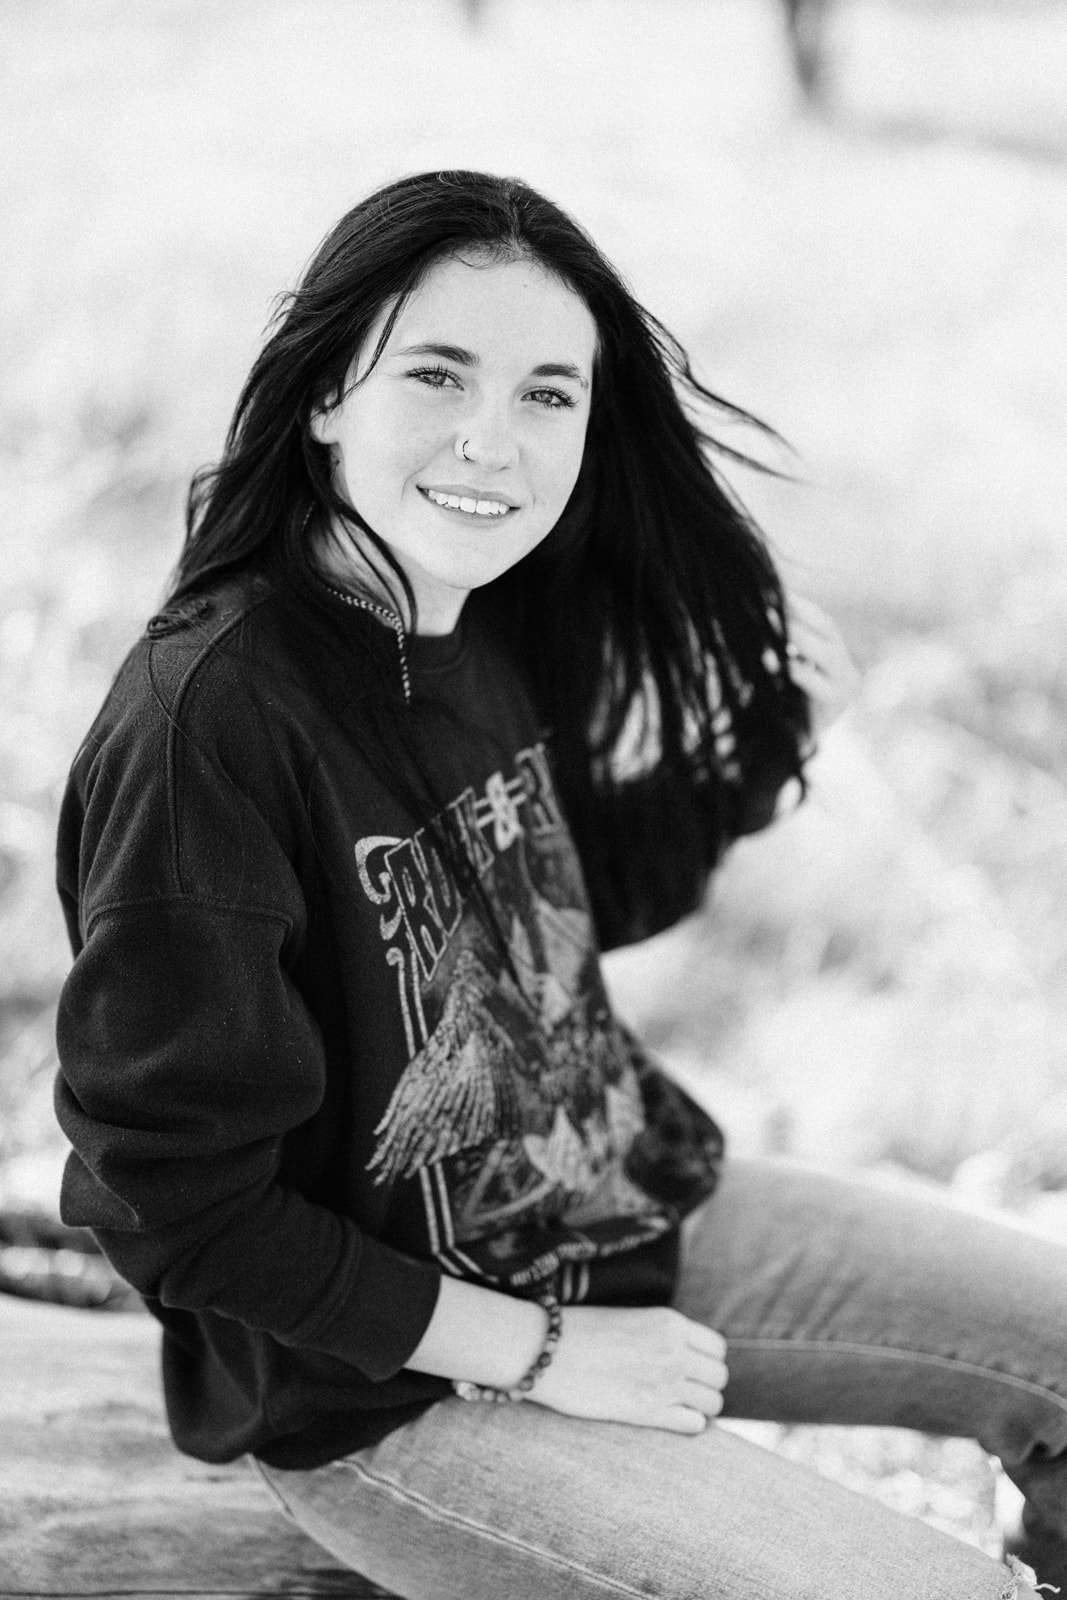 Portrait of senior girl in black and white